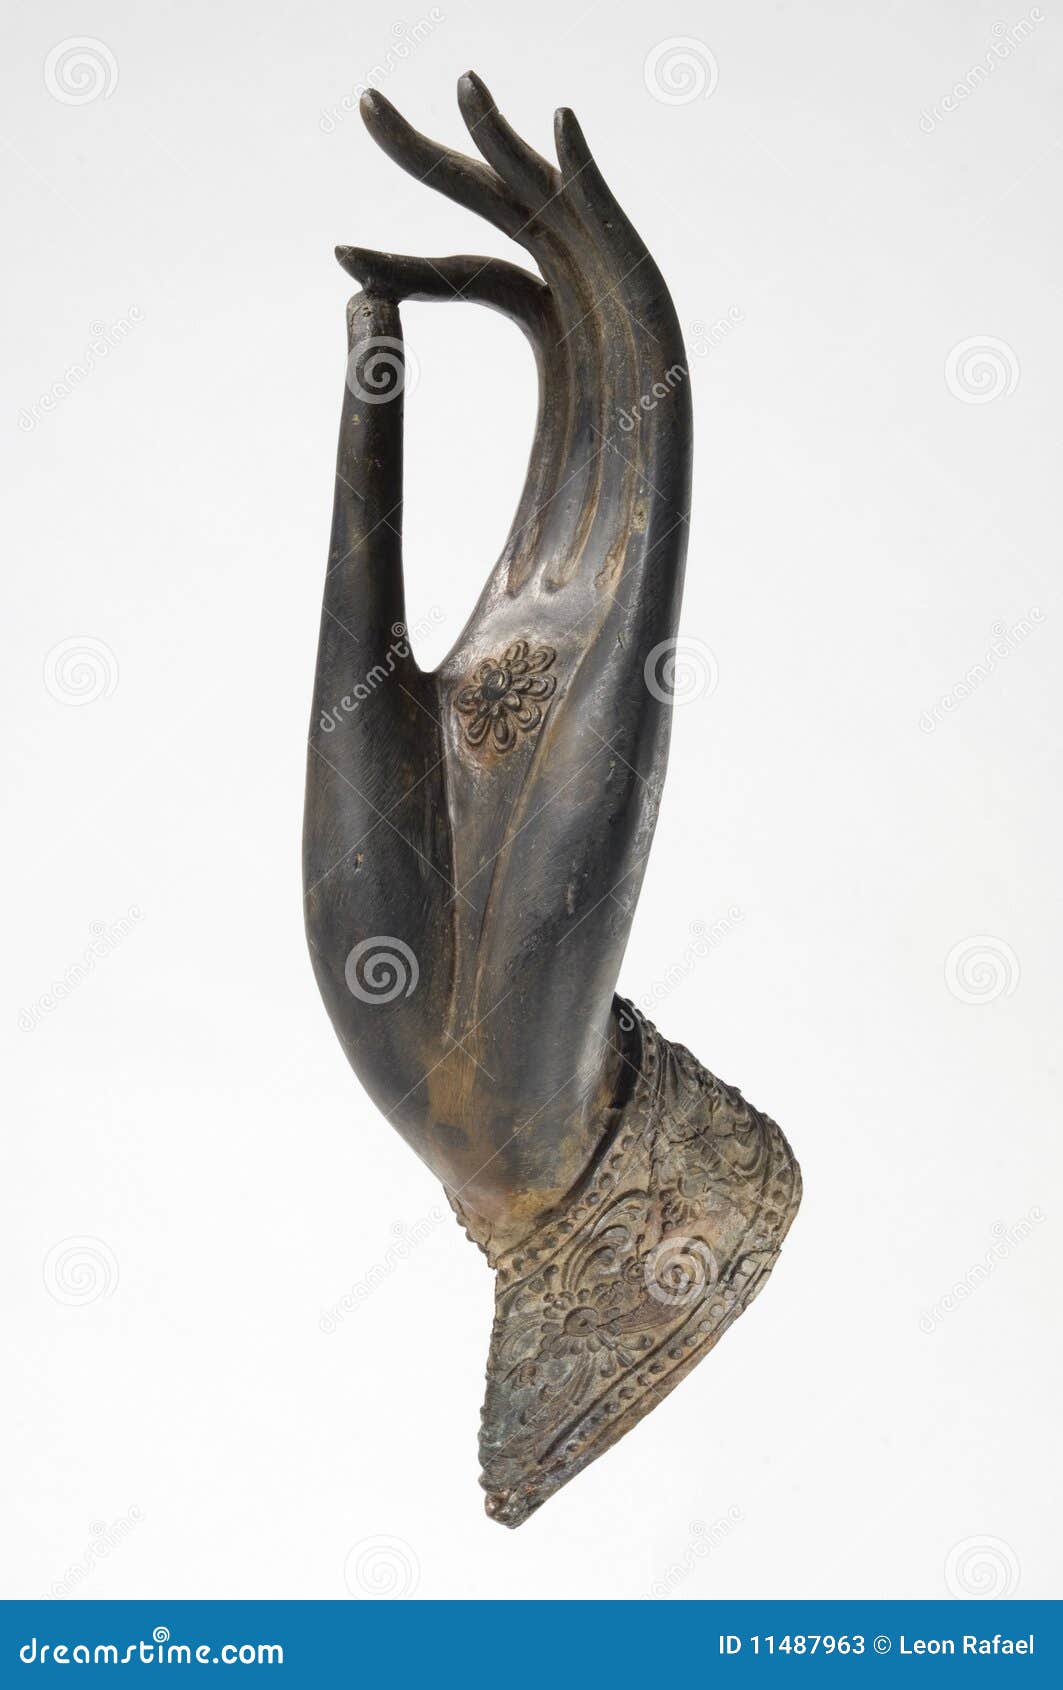 Voorkeur Crack pot Aangepaste Bronze Buddha Hand stock image. Image of human, hand - 11487963